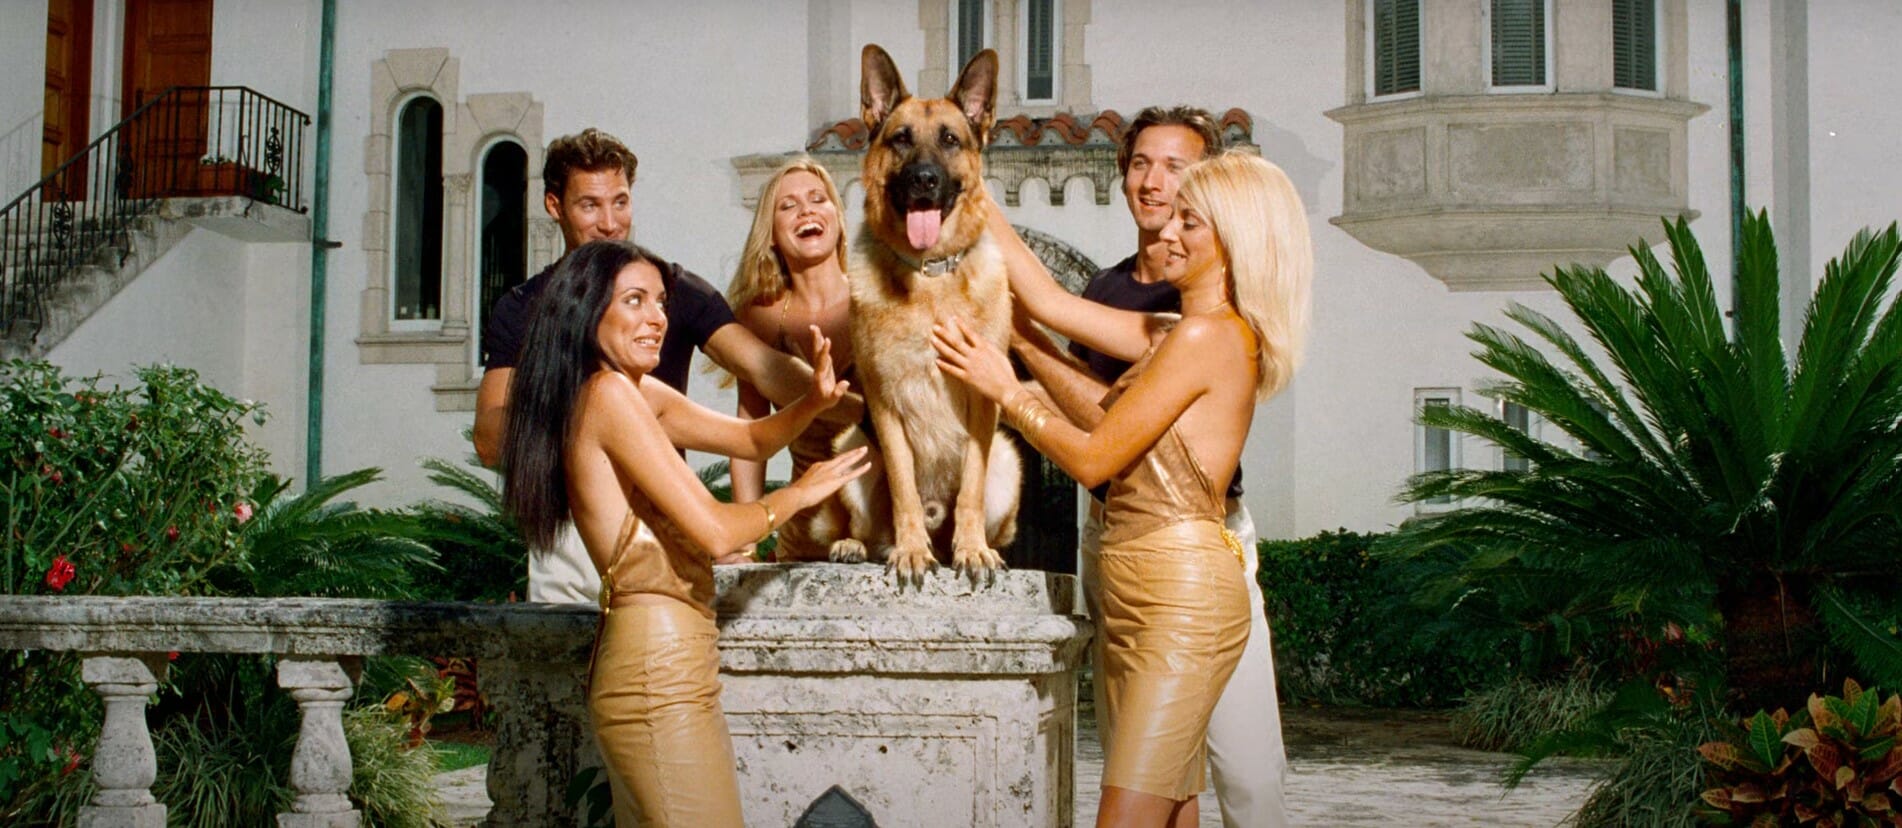 ثروته 29 مليون دولار..قصة "غونتر السادس" أغنى كلب في العالم watanserb.com